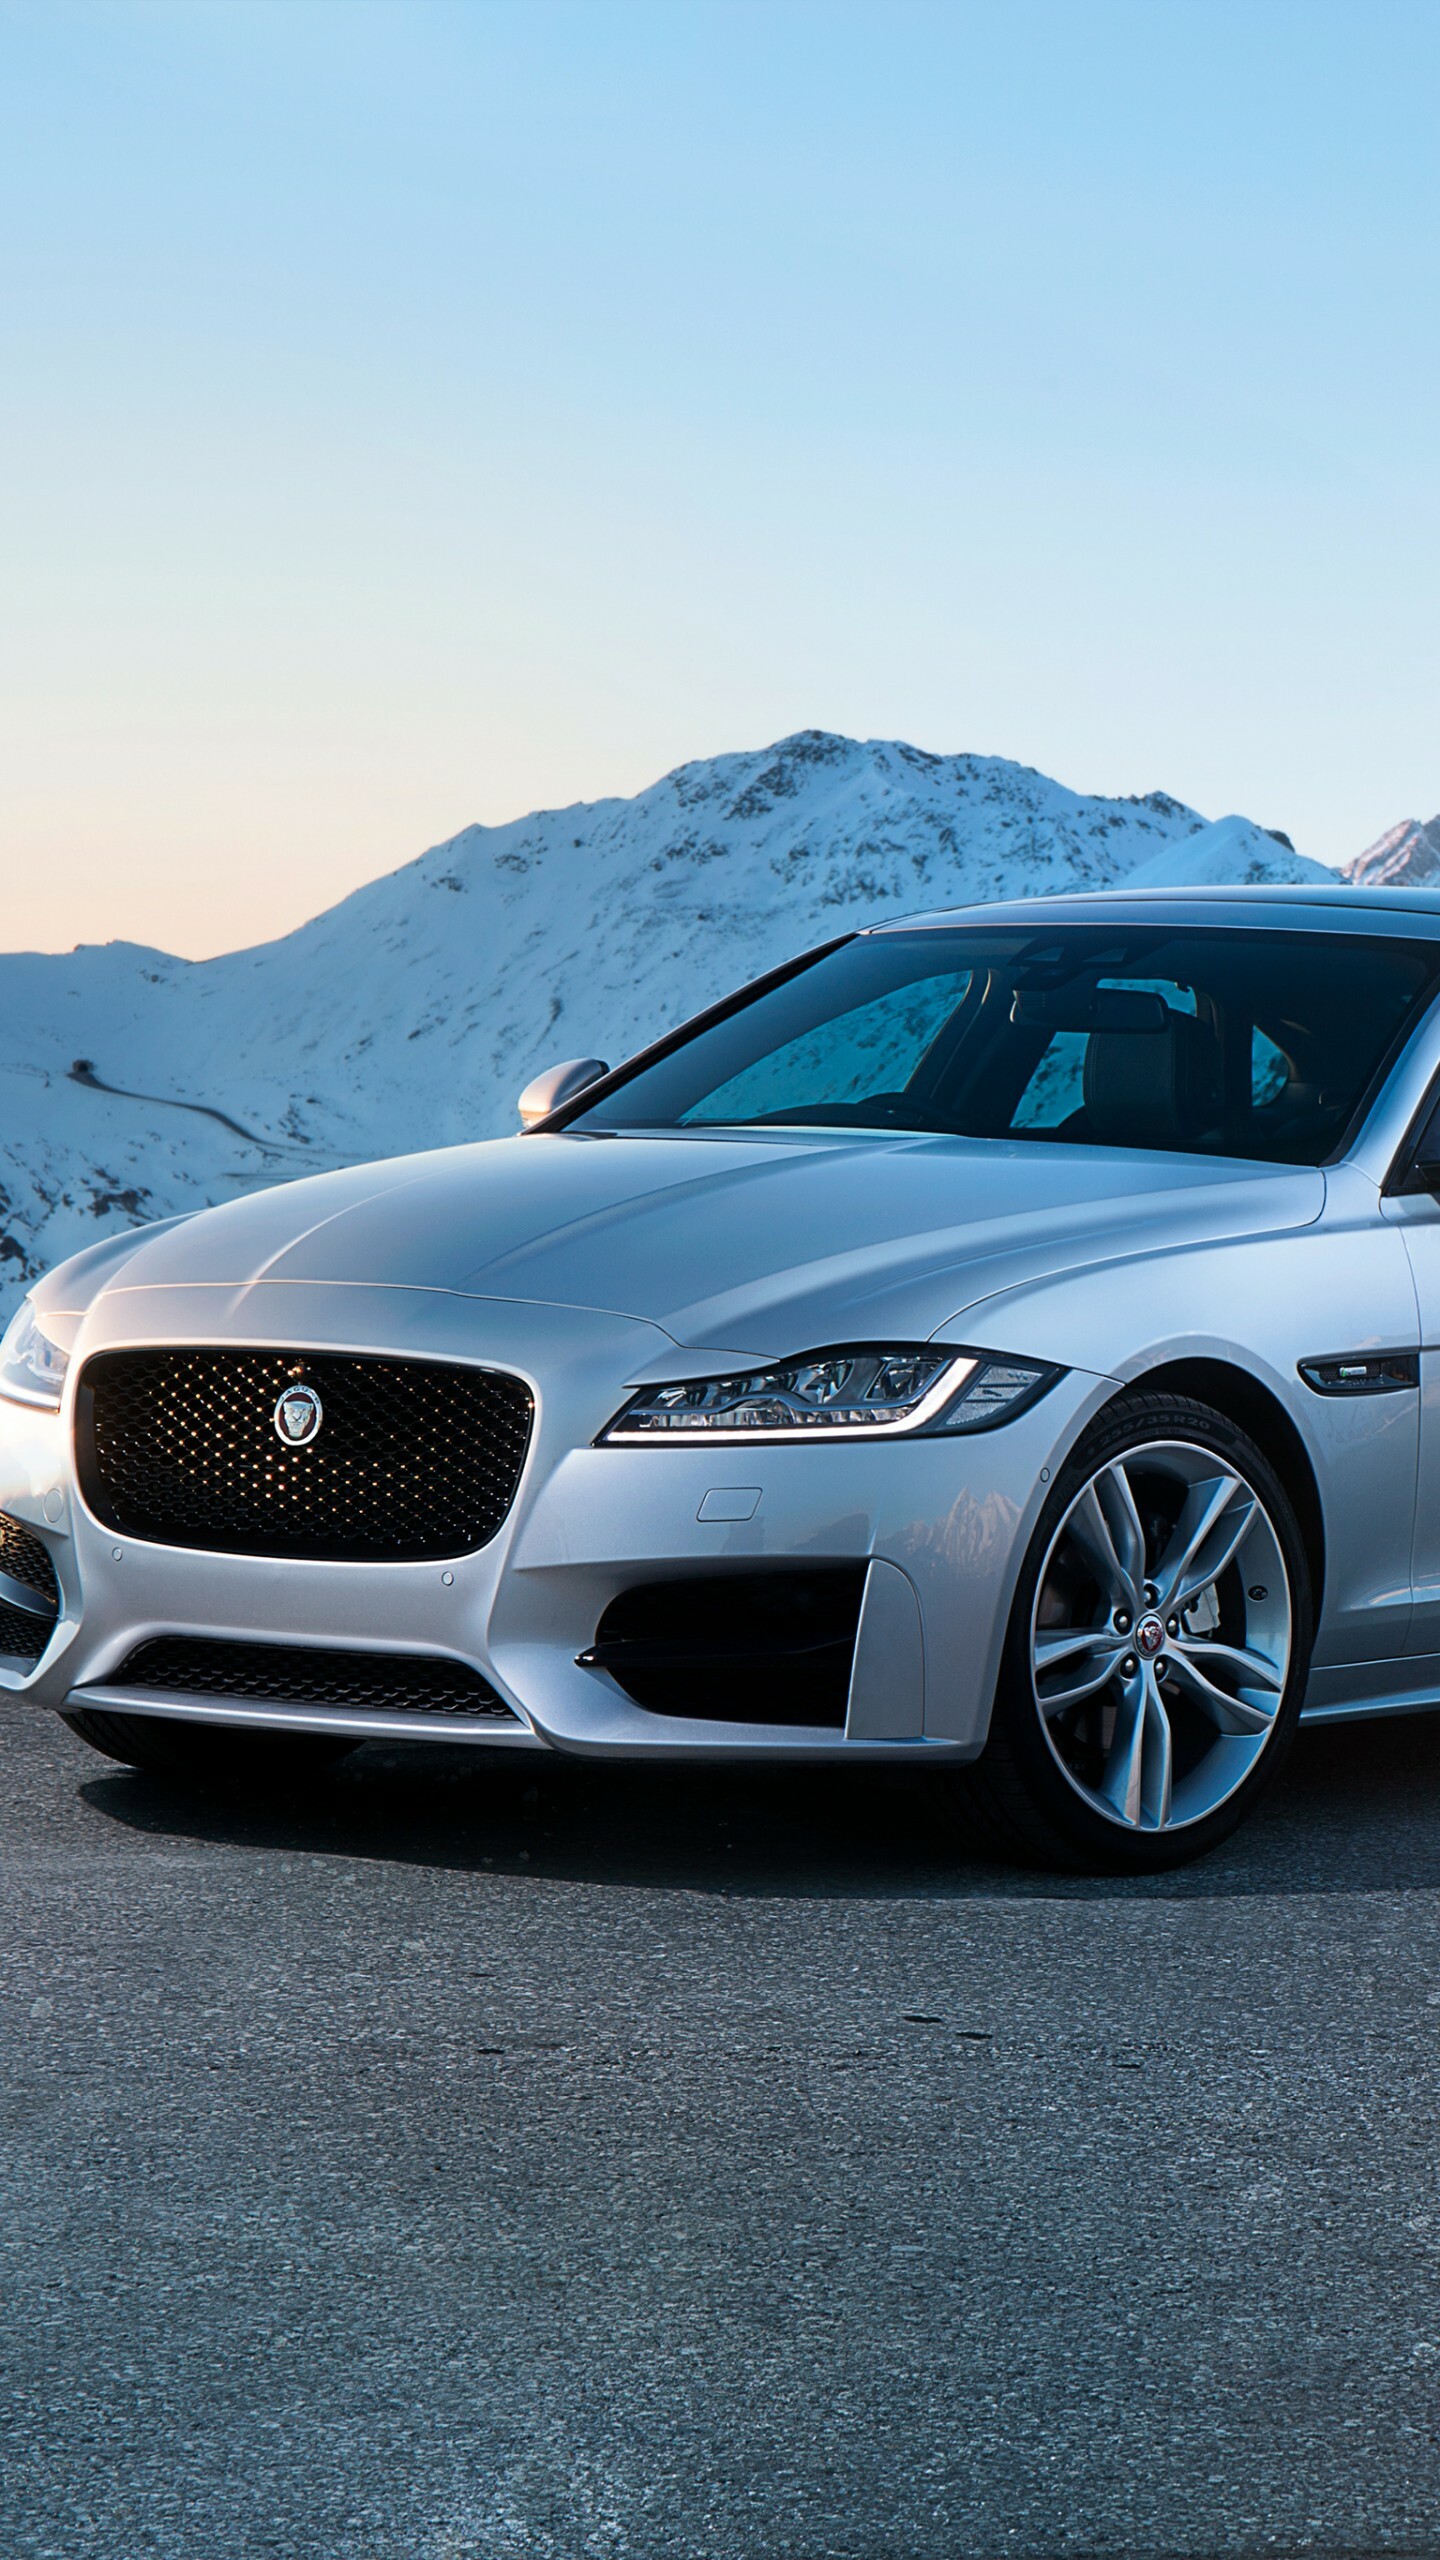 Jaguar Cars: Britain's largest automotive manufacturer, XF R-Sport, Roadster, Cars. 1440x2560 HD Wallpaper.